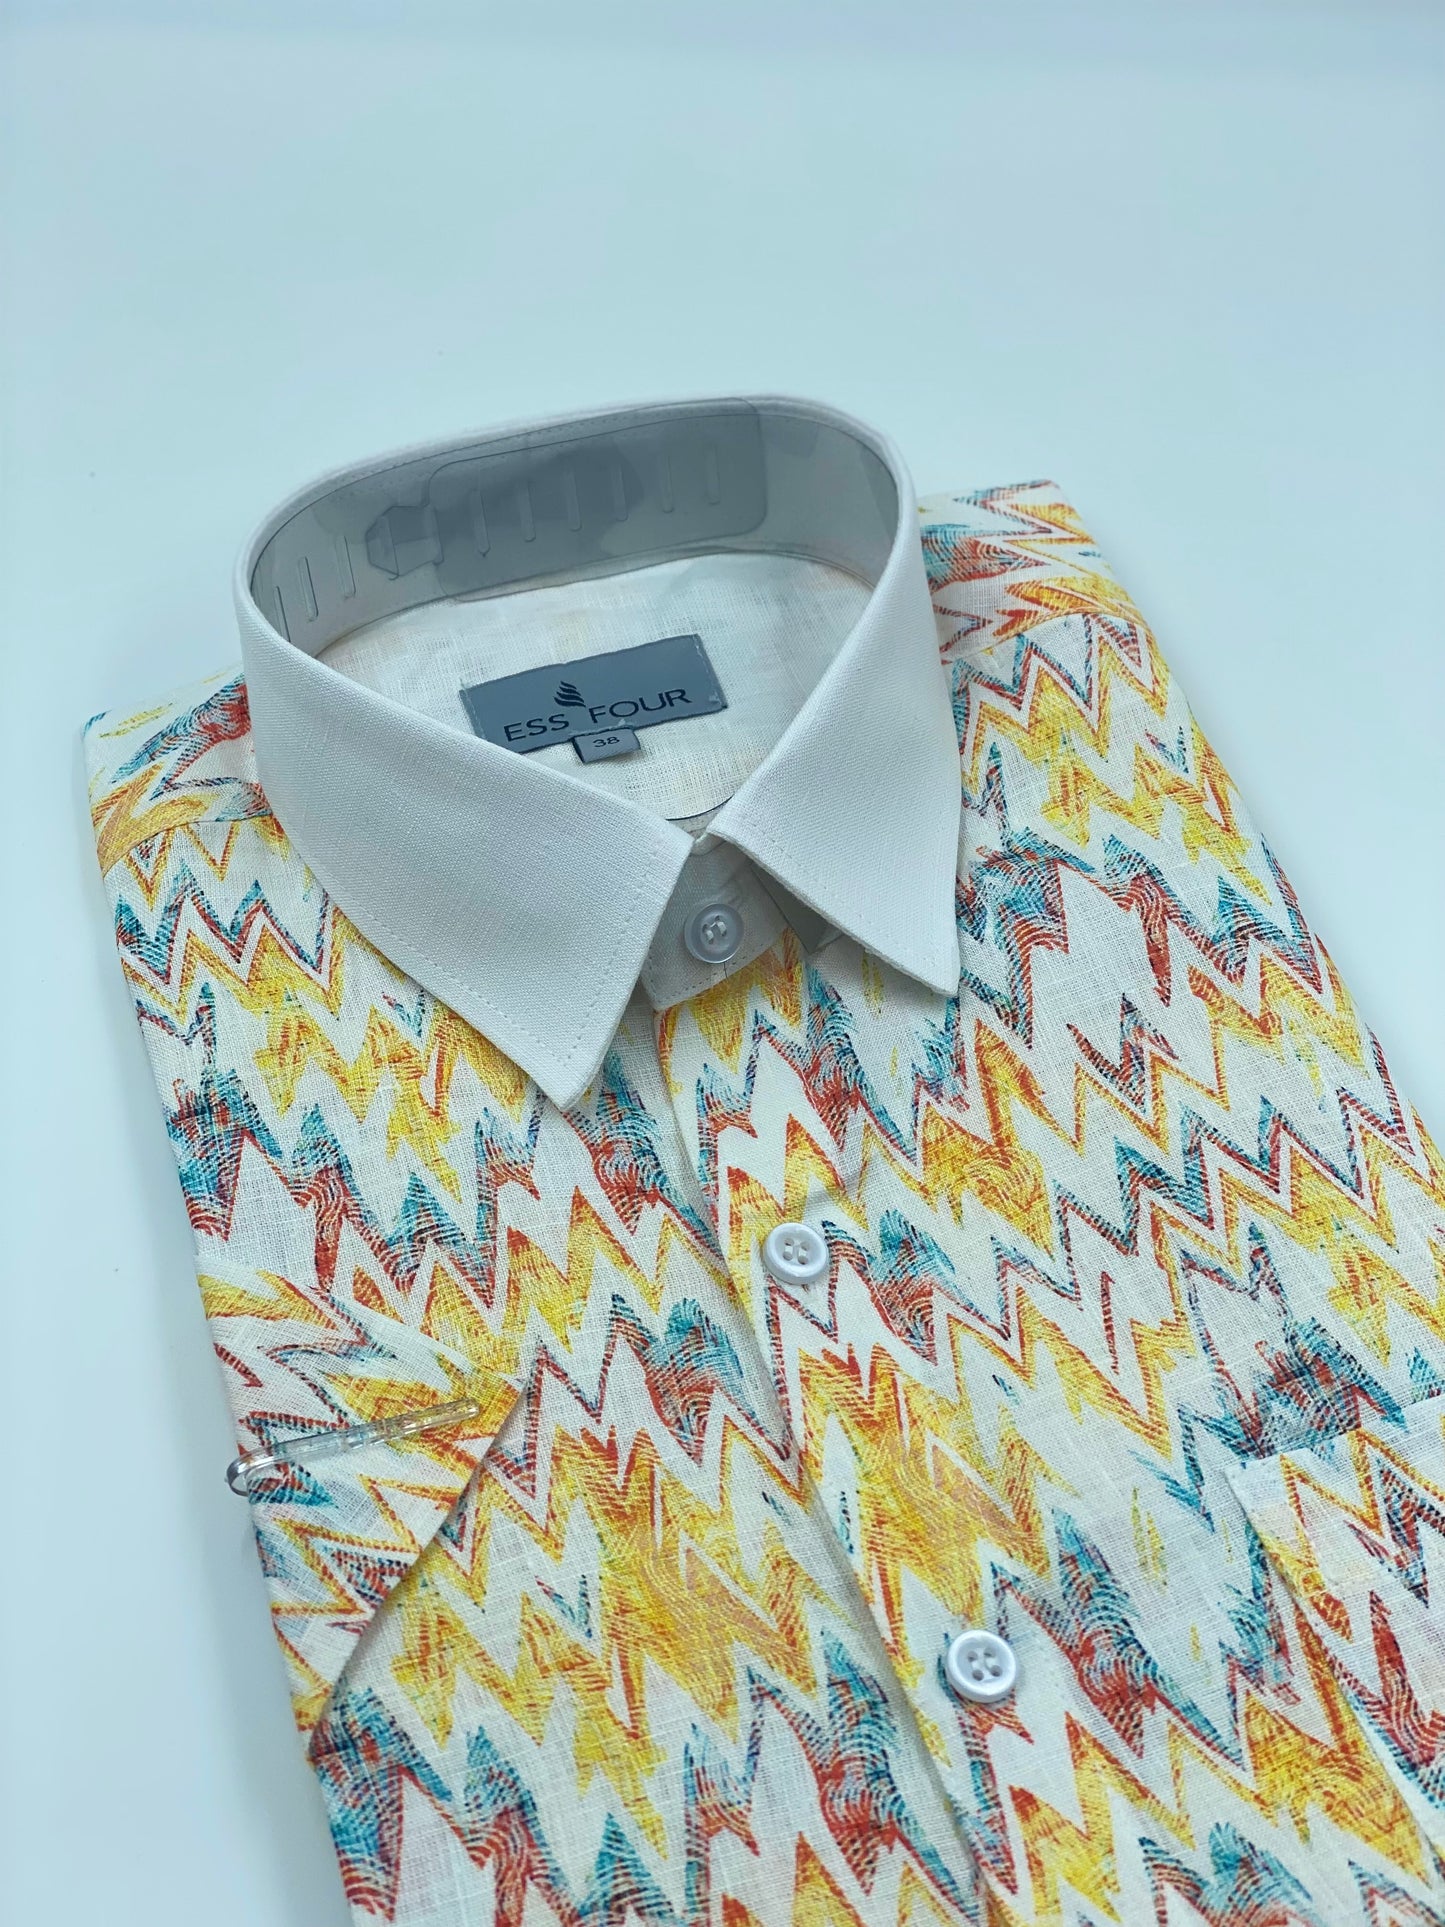 Tistabene Printed Linen Shirt - Men's Linen Shirt